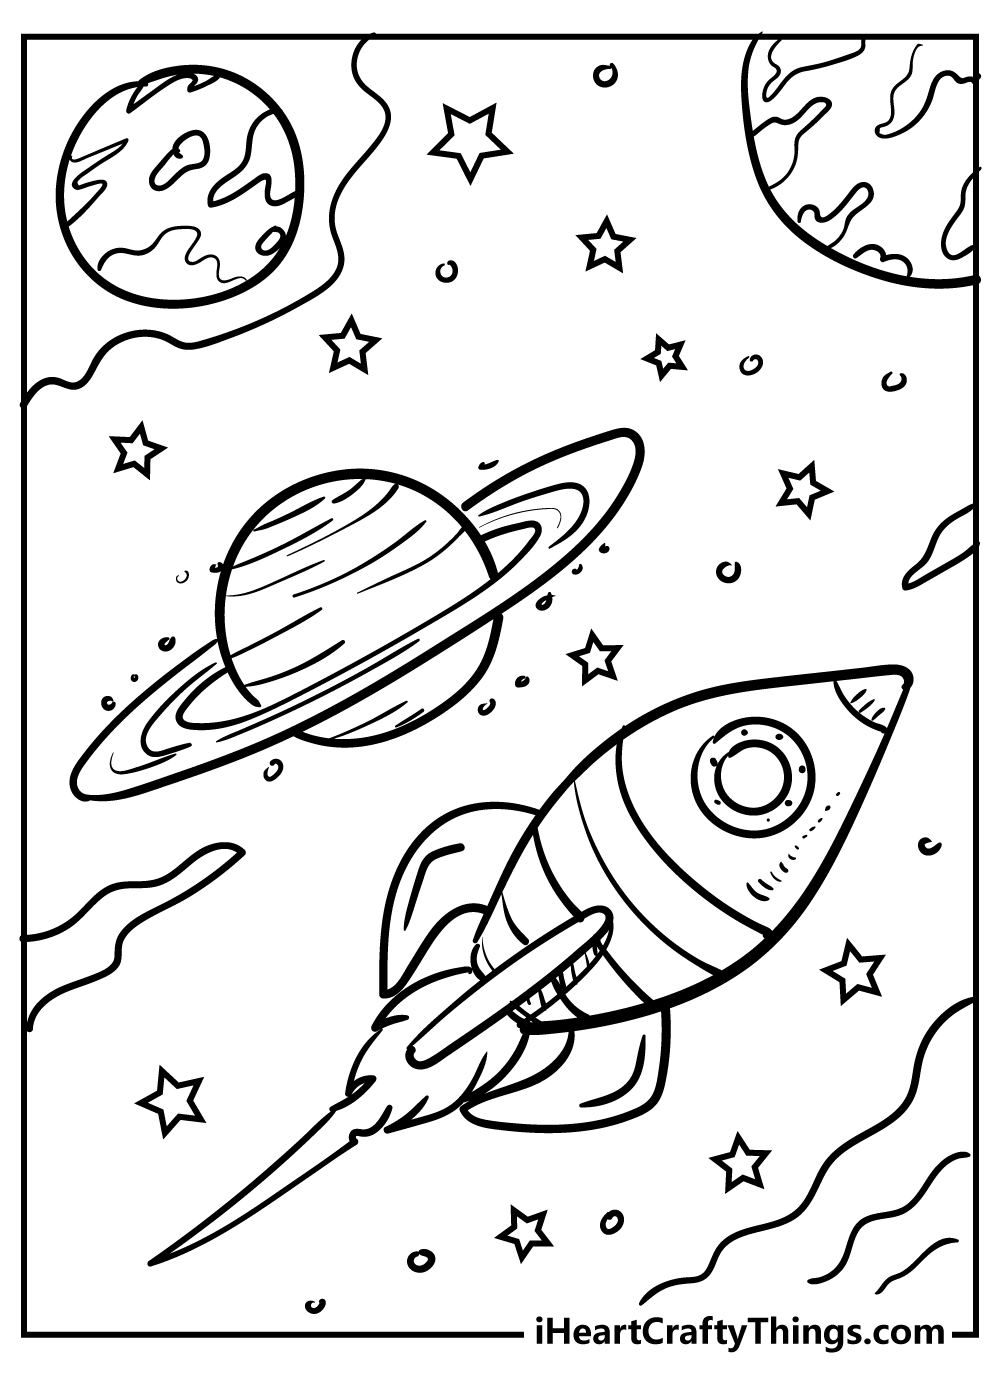 Раскраска космос для детей 3 лет. Космос раскраска для детей. Раскраска. В космосе. Раскраска космос и планеты для детей. Космические раскраски для детей.